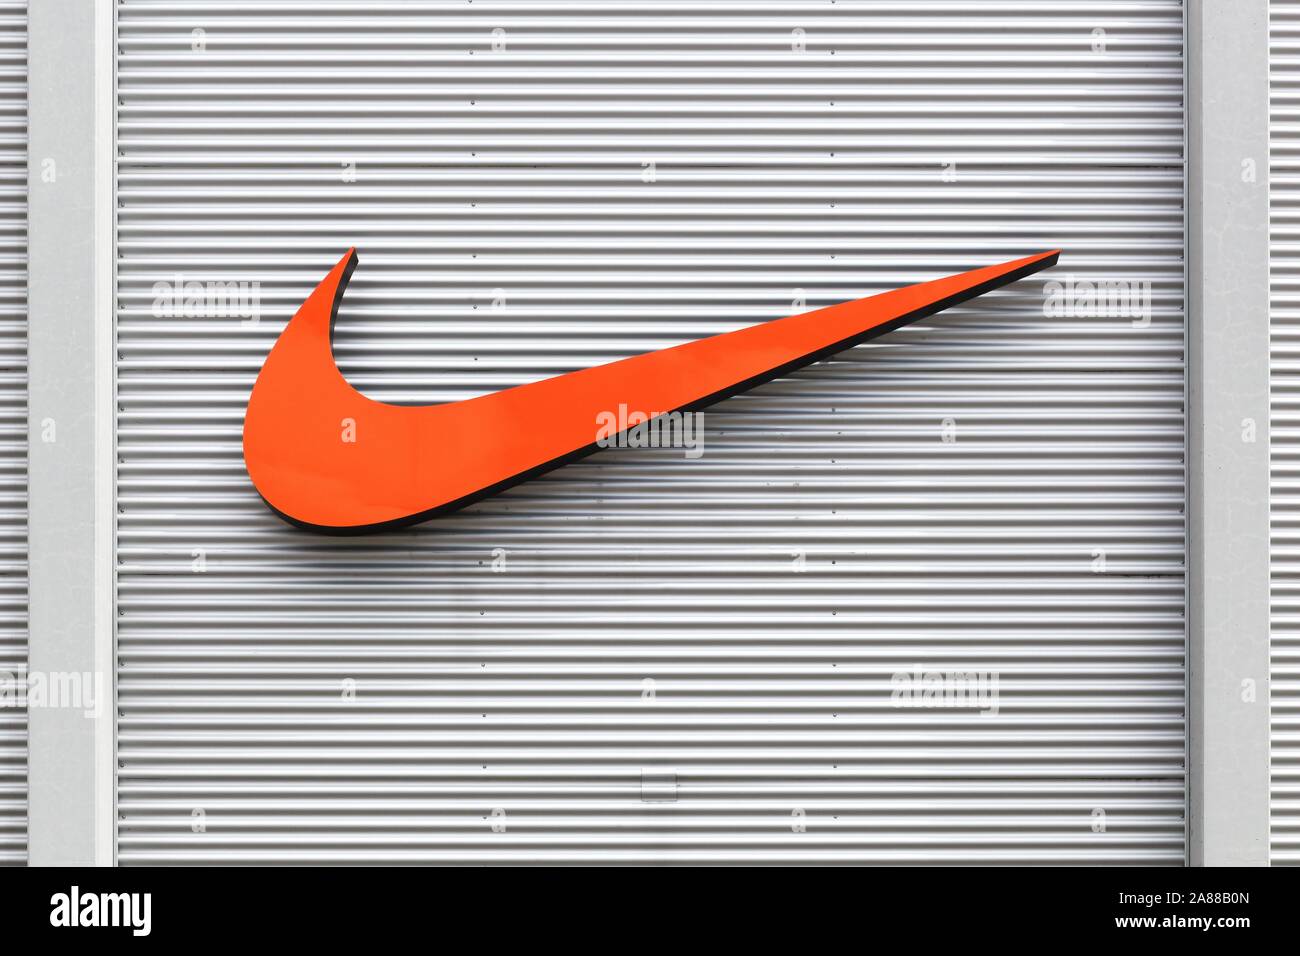 Bremen, Deutschland - Juli 2, 2017: Nike Logo auf einer Fassade eines speichern. Nike ist ein amerikanisches Unternehmen, spezialisiert auf die Sportgeräte in Beaverton, USA Stockfoto